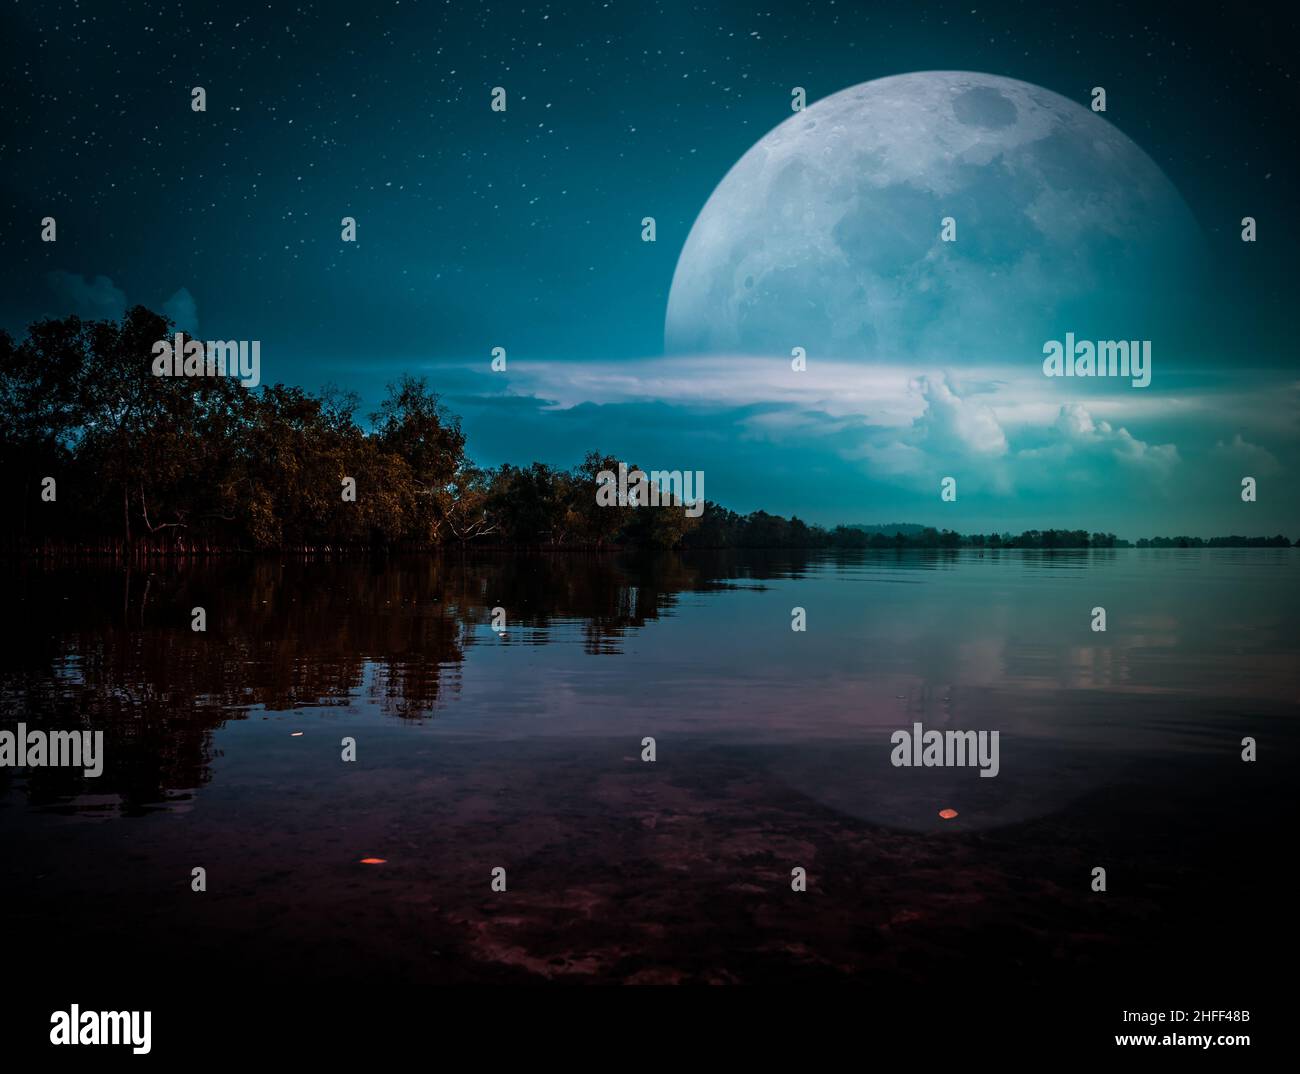 Fotobearbeitung. Landschaft des Nachthimmels mit vielen Sternen. Wunderschöner Super-Mond hinter teilweise bewölkt über Silhouetten von Bäumen, Seengebiet. Gelassenheit Stockfoto